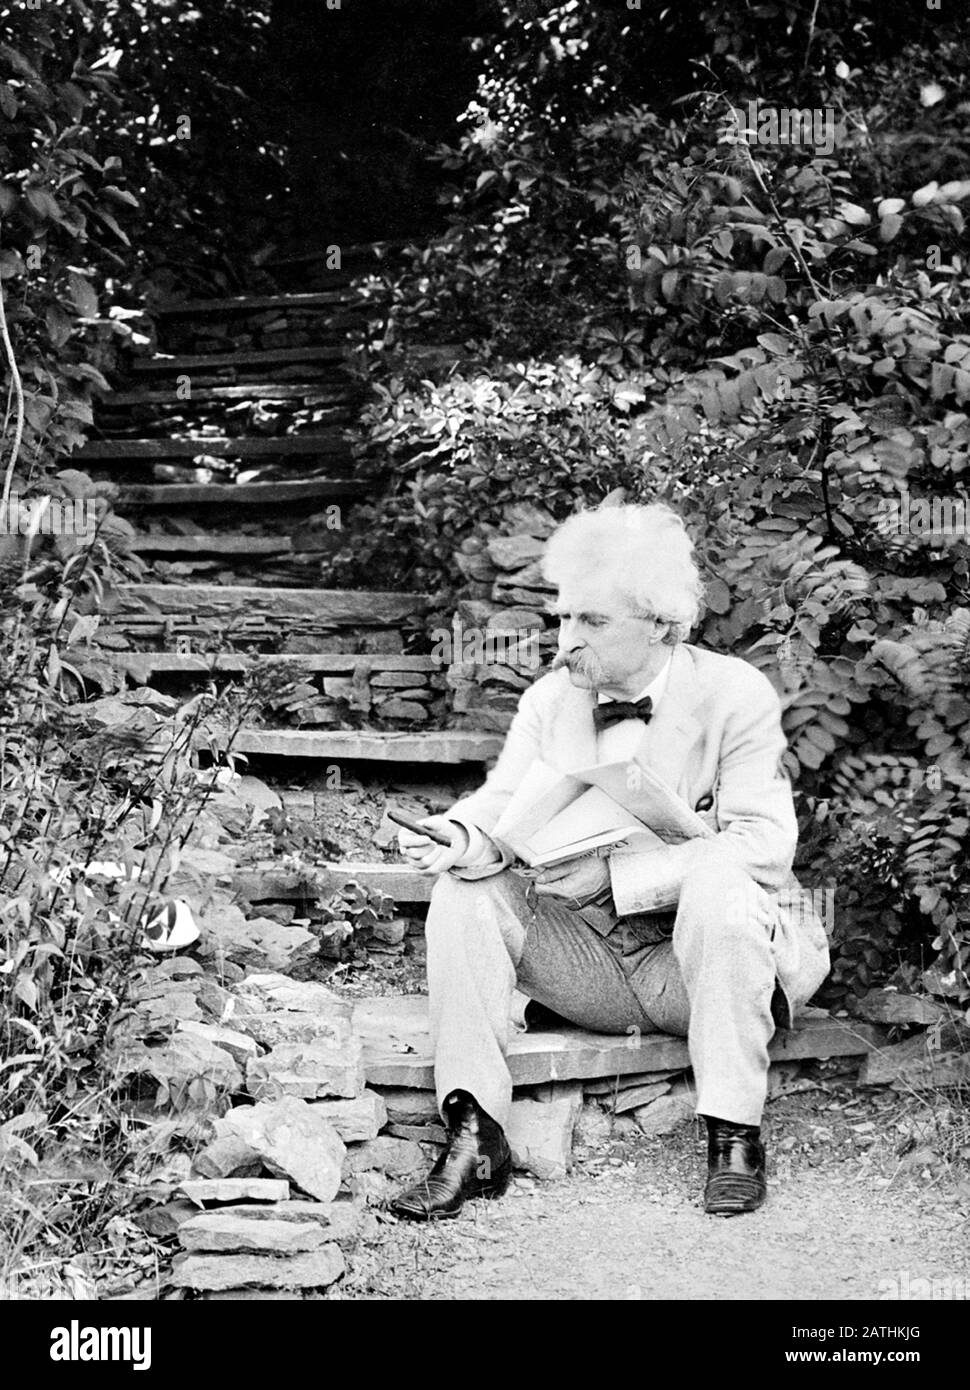 Ritratto d'epoca di scrittore americano e umorista Samuel Langhorne Clemens (1835 – 1910), meglio conosciuto dal suo nome di penna di Mark Twain. Foto circa 1903 di T e Marr / Curtis Publishing Co. Foto Stock